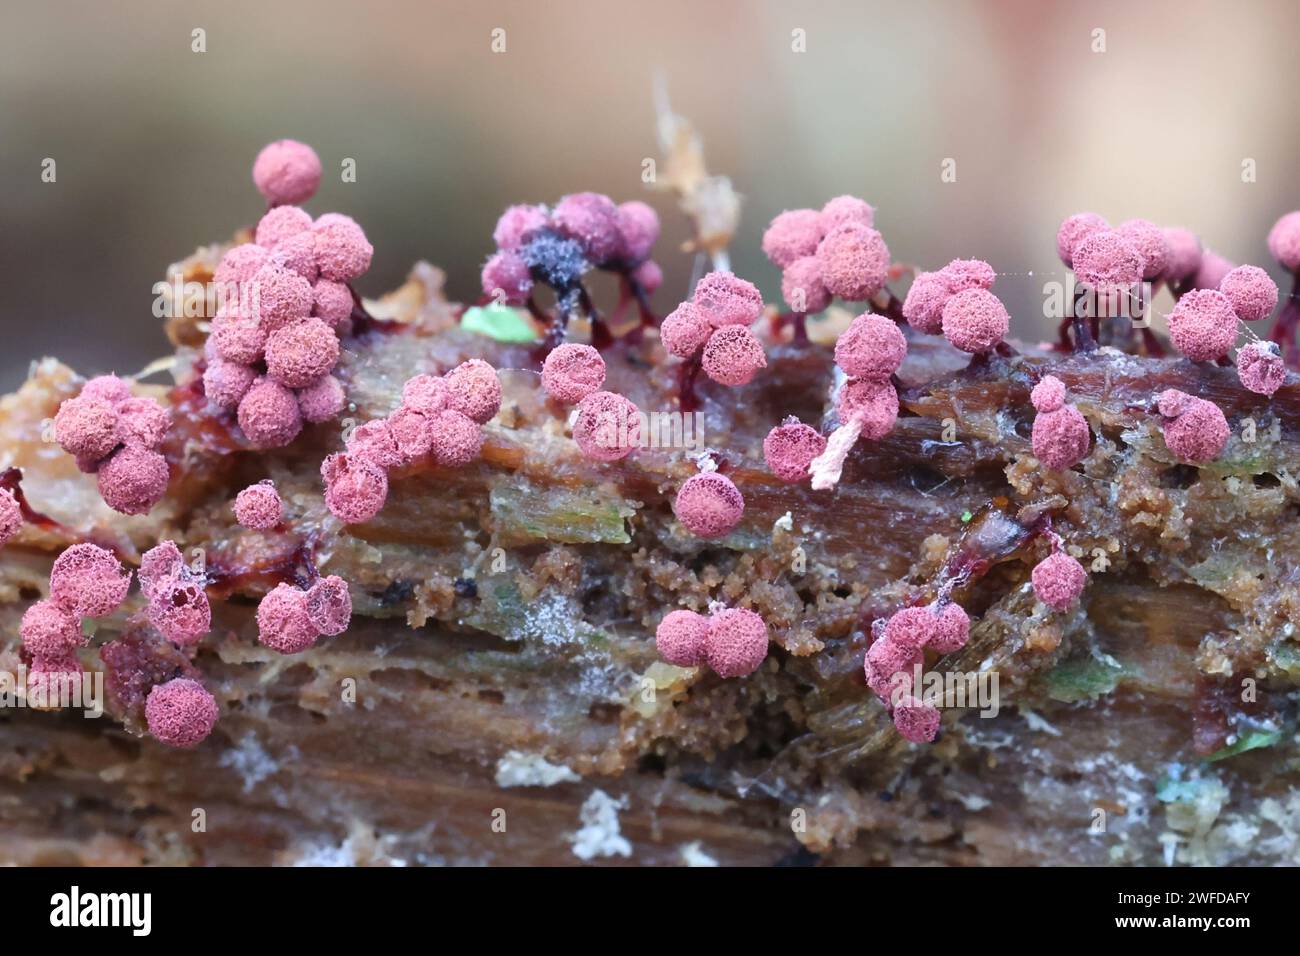 Cribraria purpurea, purple slime mold from Finland, no common English name Stock Photo